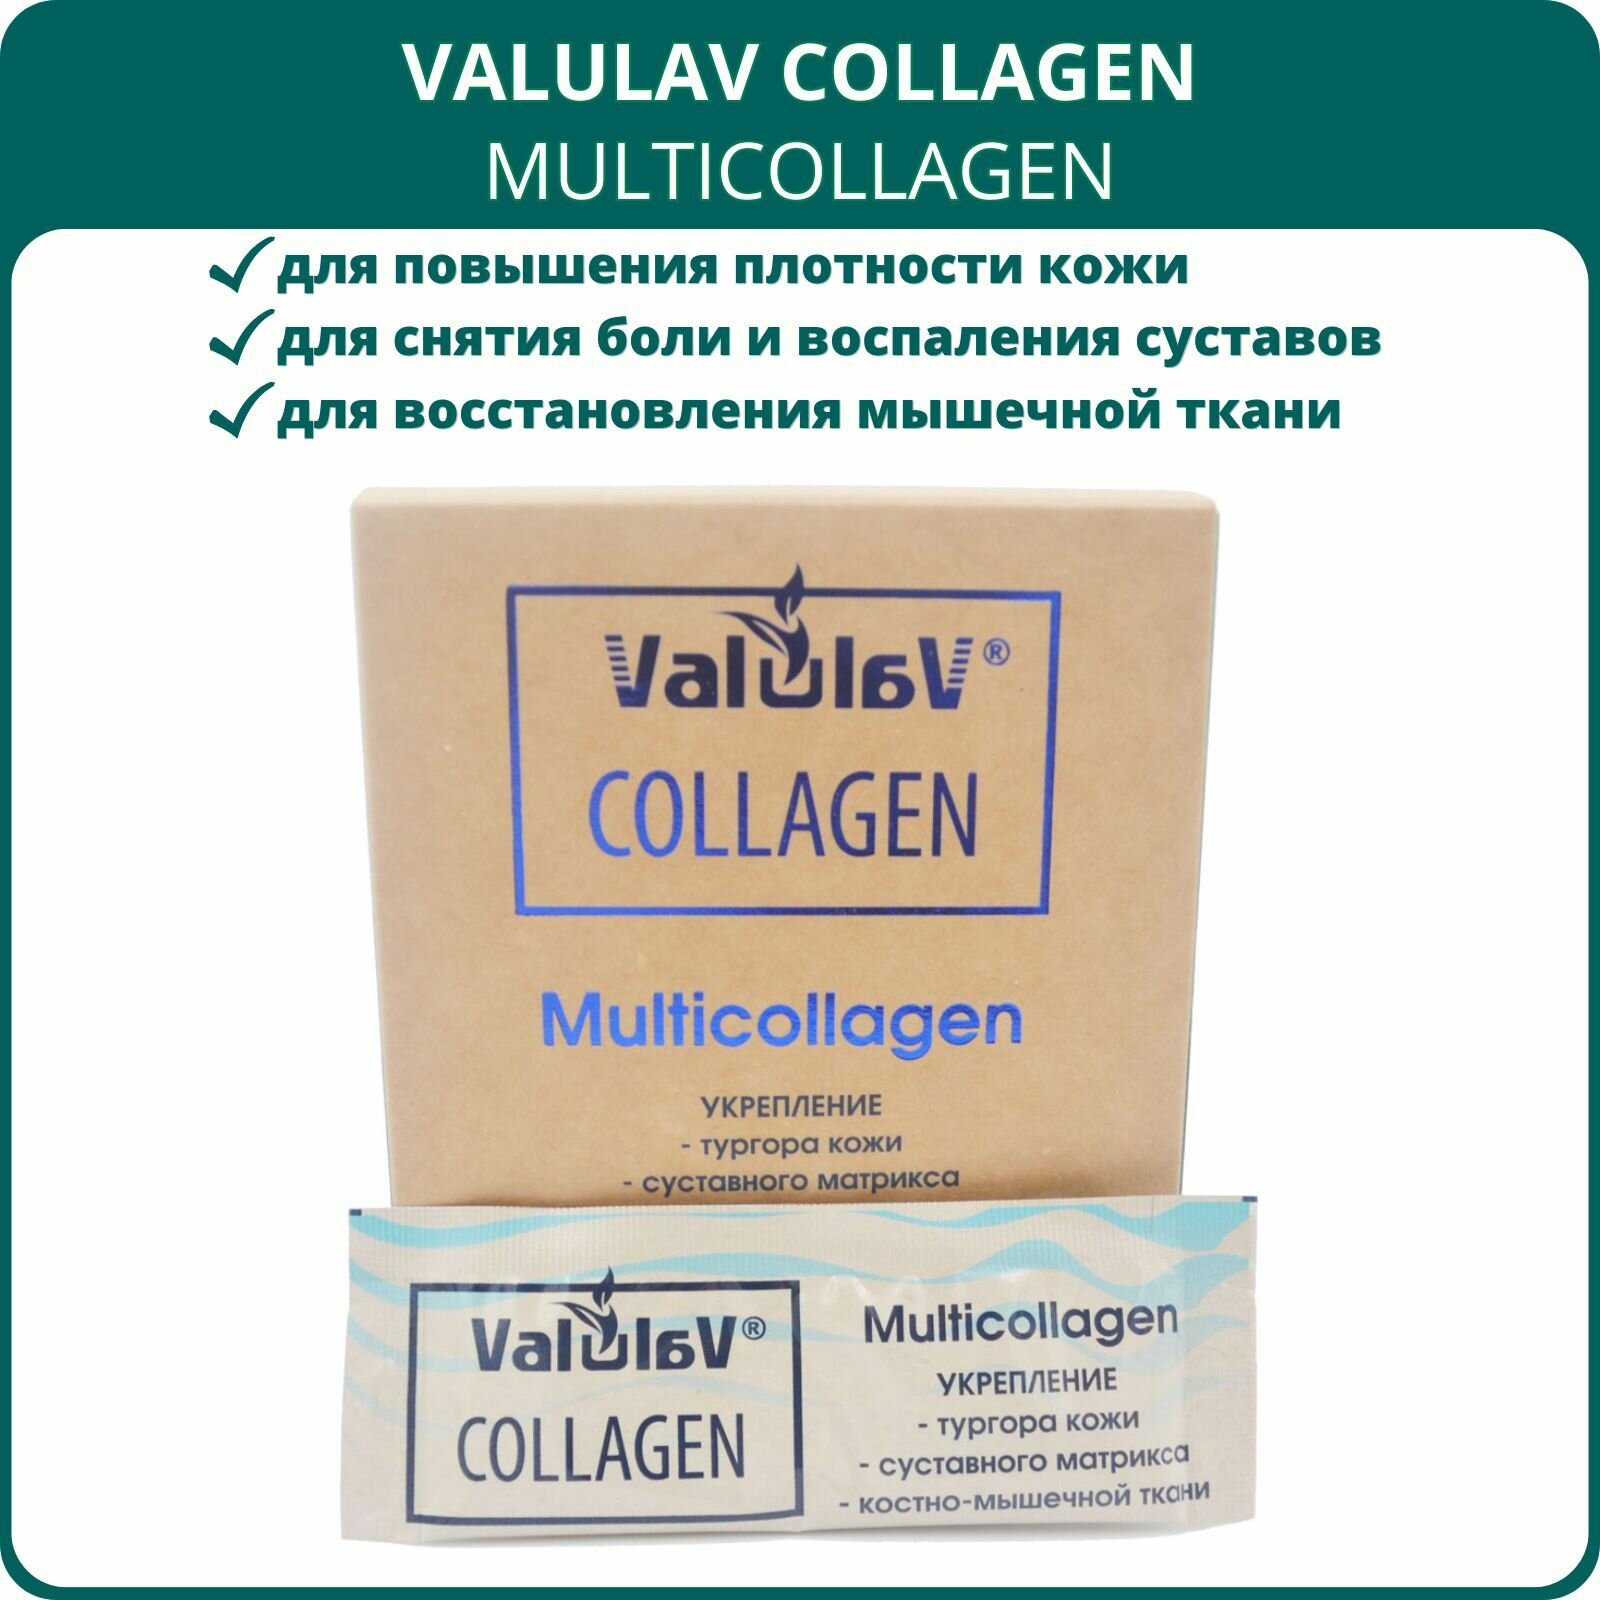 ValulaV Collagen Мультиколлаген, 20 стиков. Комплекс для укрепления кожи, суставов, стенок артерий, костно-мышечной ткани